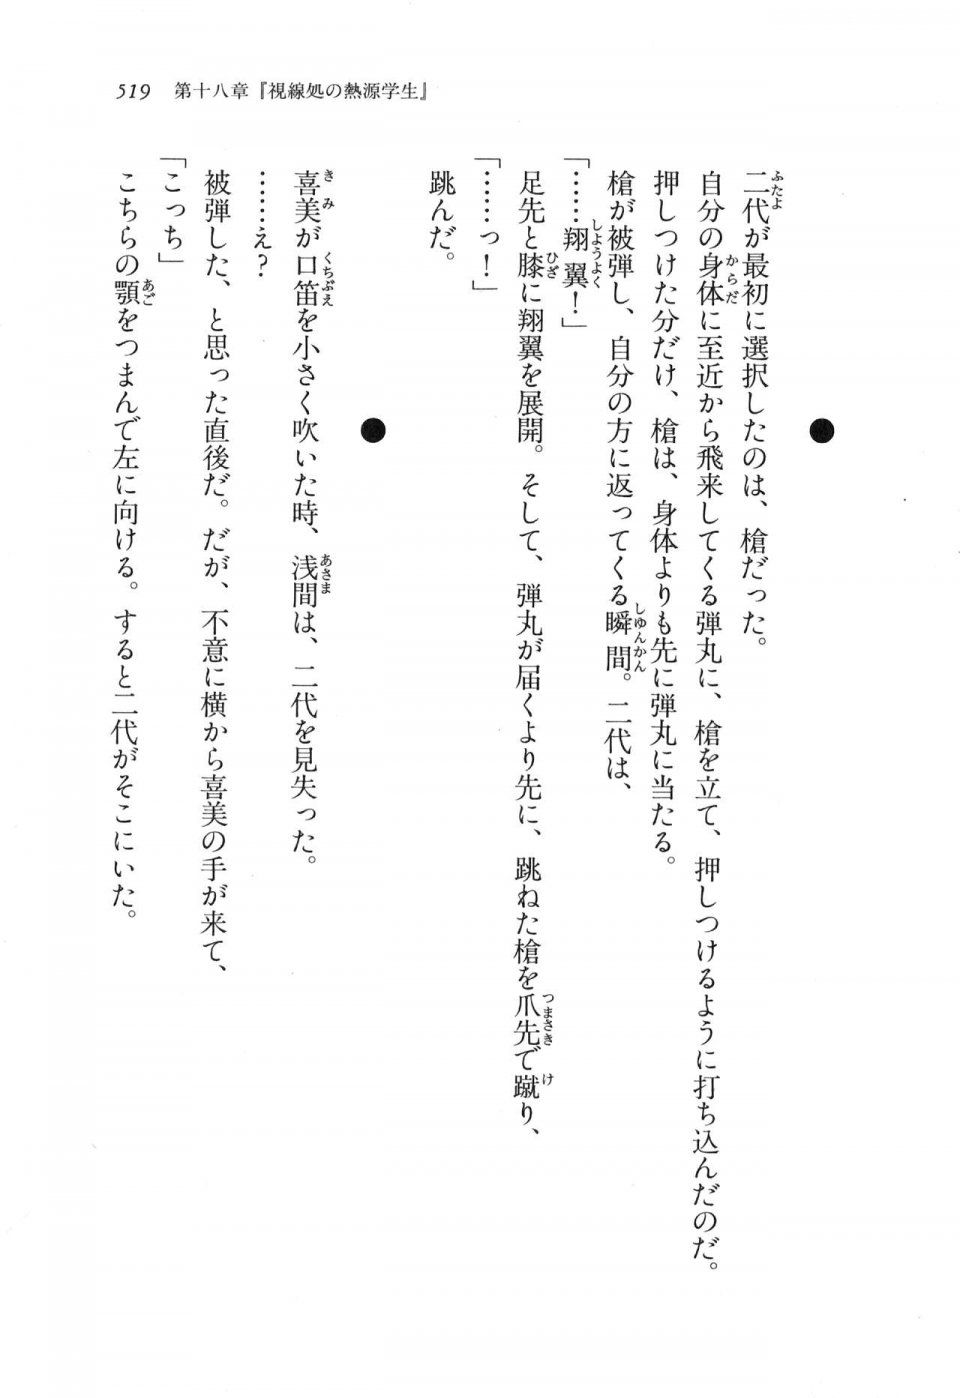 Kyoukai Senjou no Horizon LN Vol 11(5A) - Photo #519